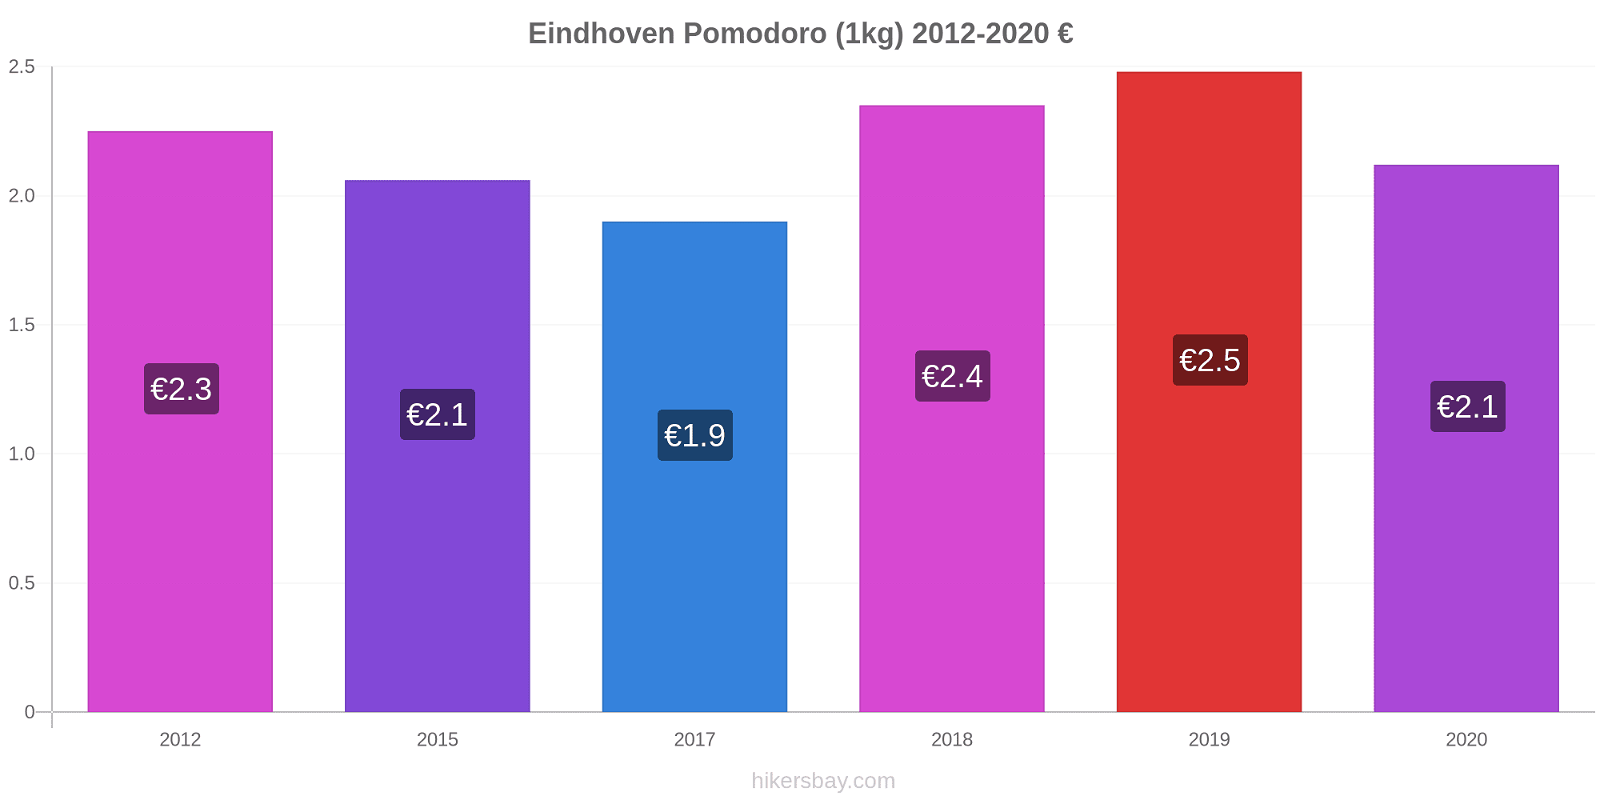 Eindhoven variazioni di prezzo Pomodoro (1kg) hikersbay.com